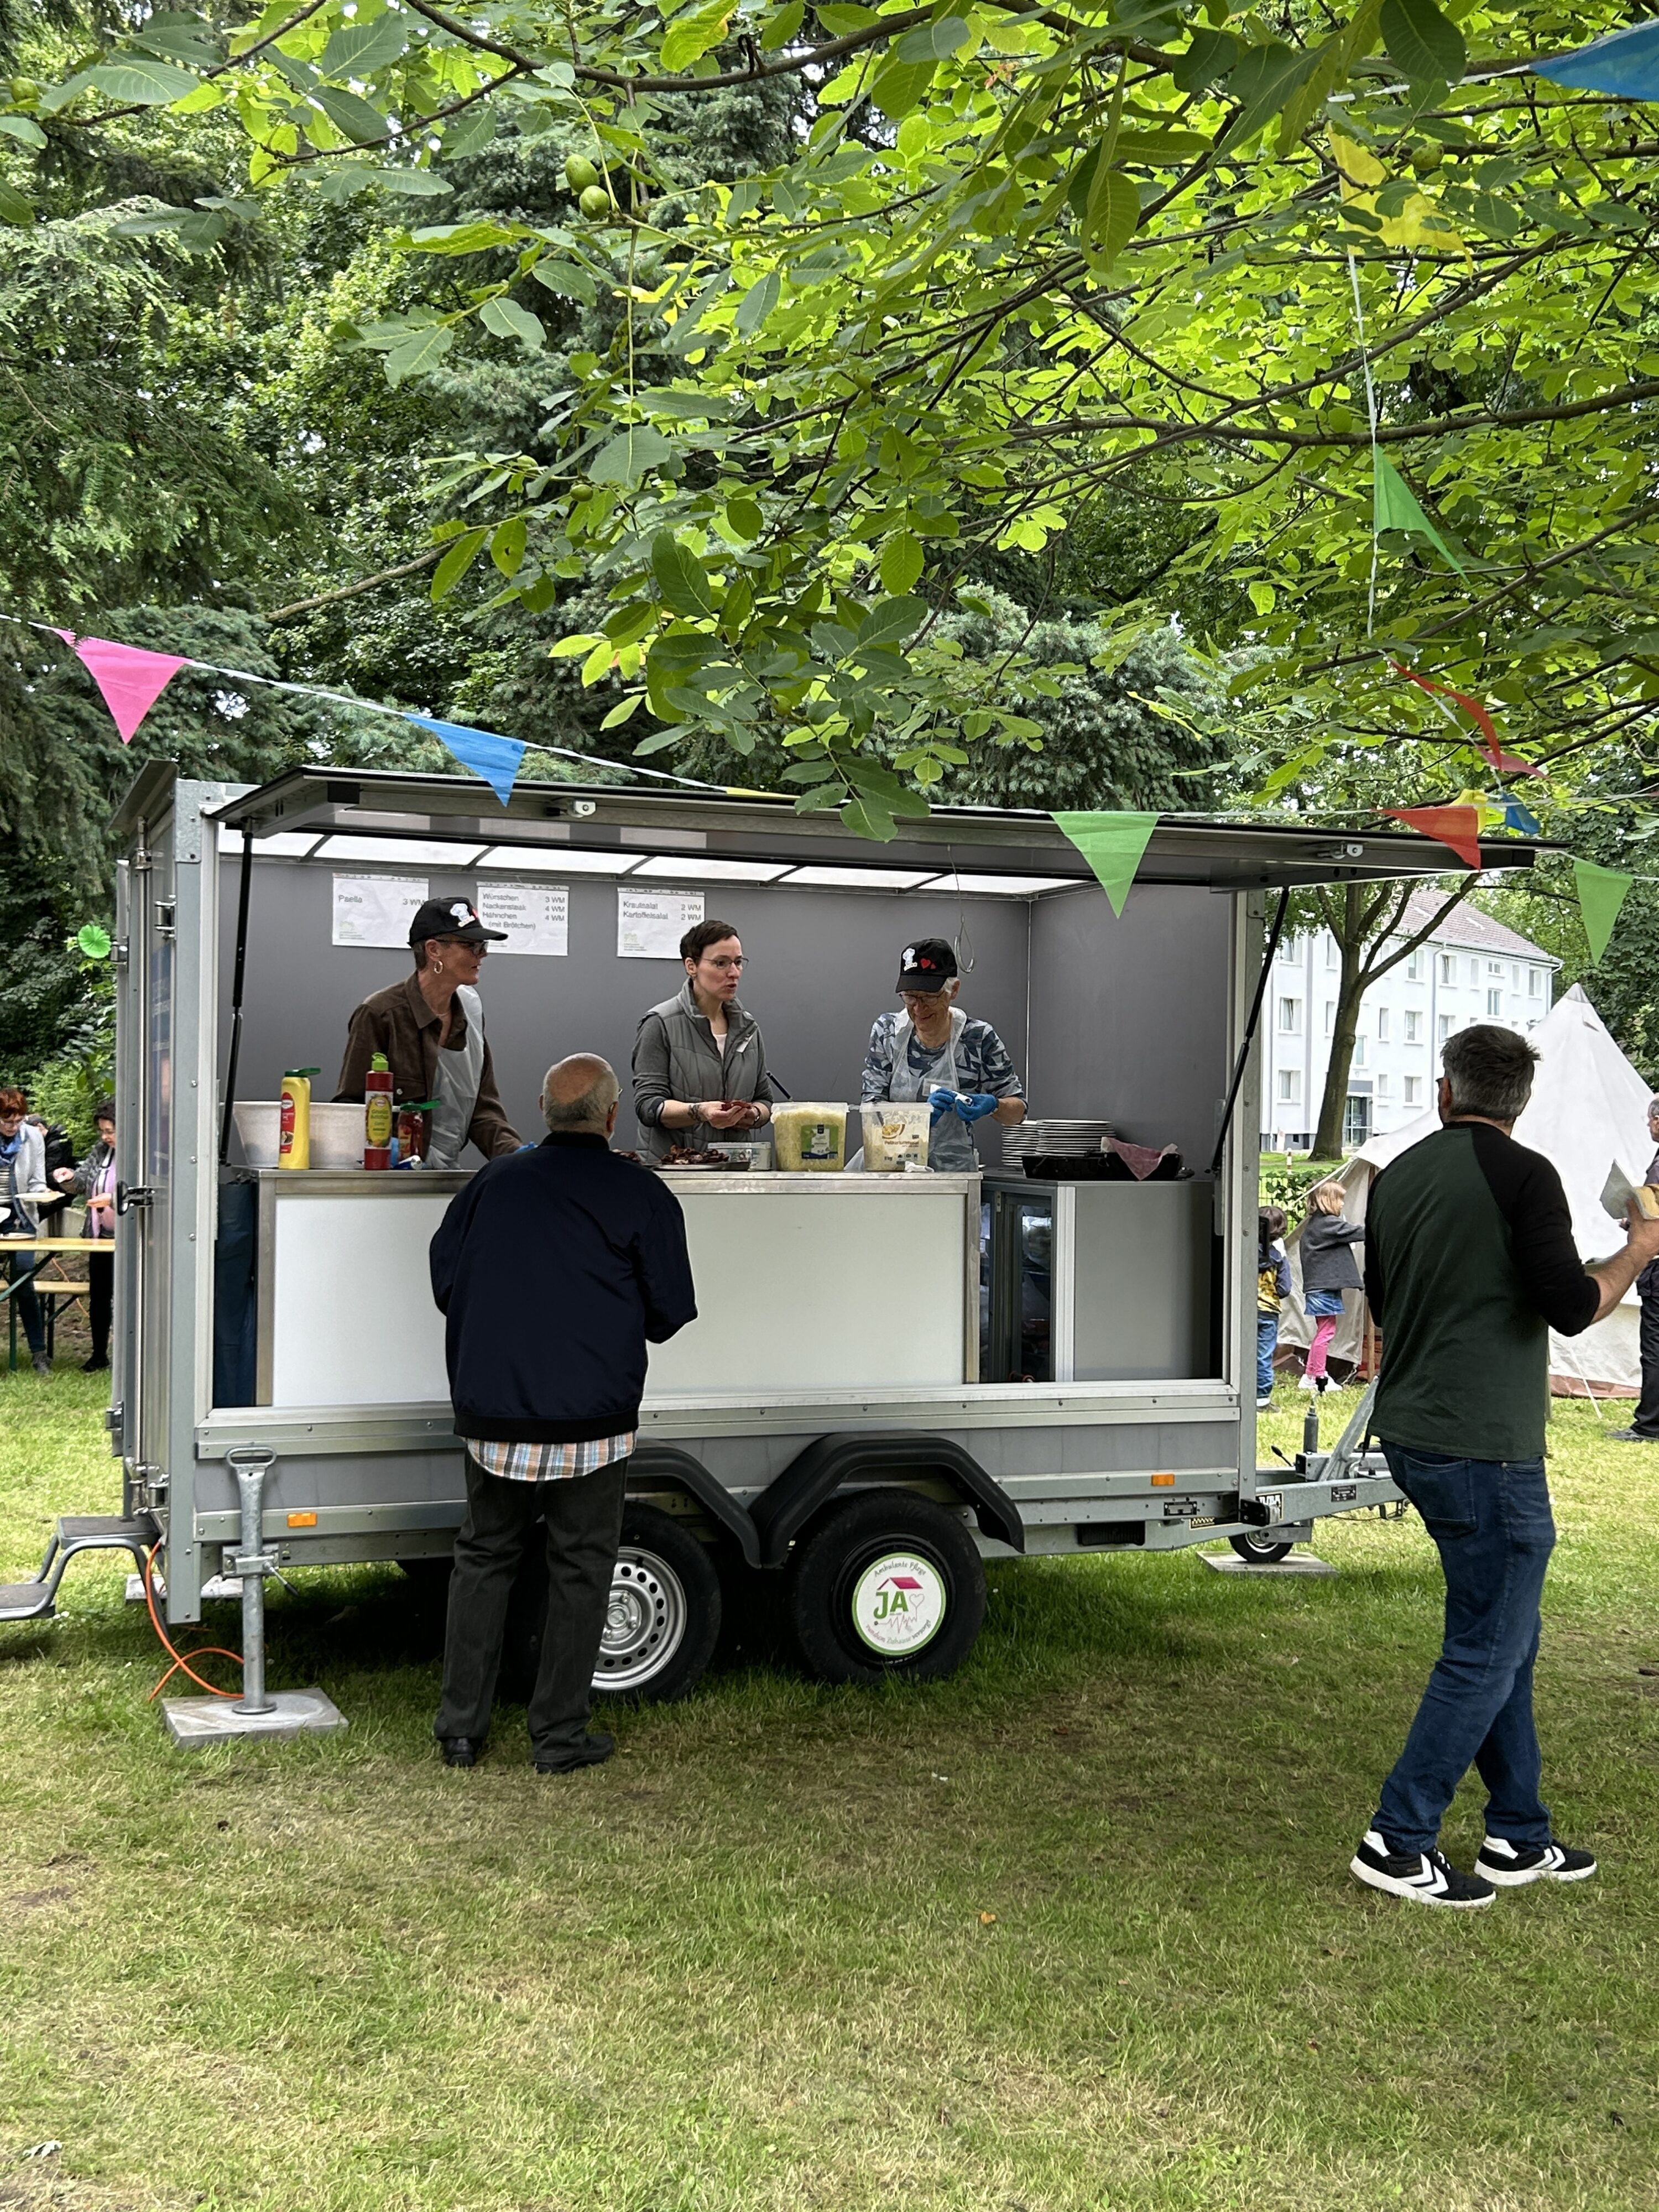 Im Garten des Martin-Niemöller-Hauses steht ein Festwagen, auf dem drei Personen Essen ausgeben. Im Vordergrund zwei Personen mit Essen in der Hand.